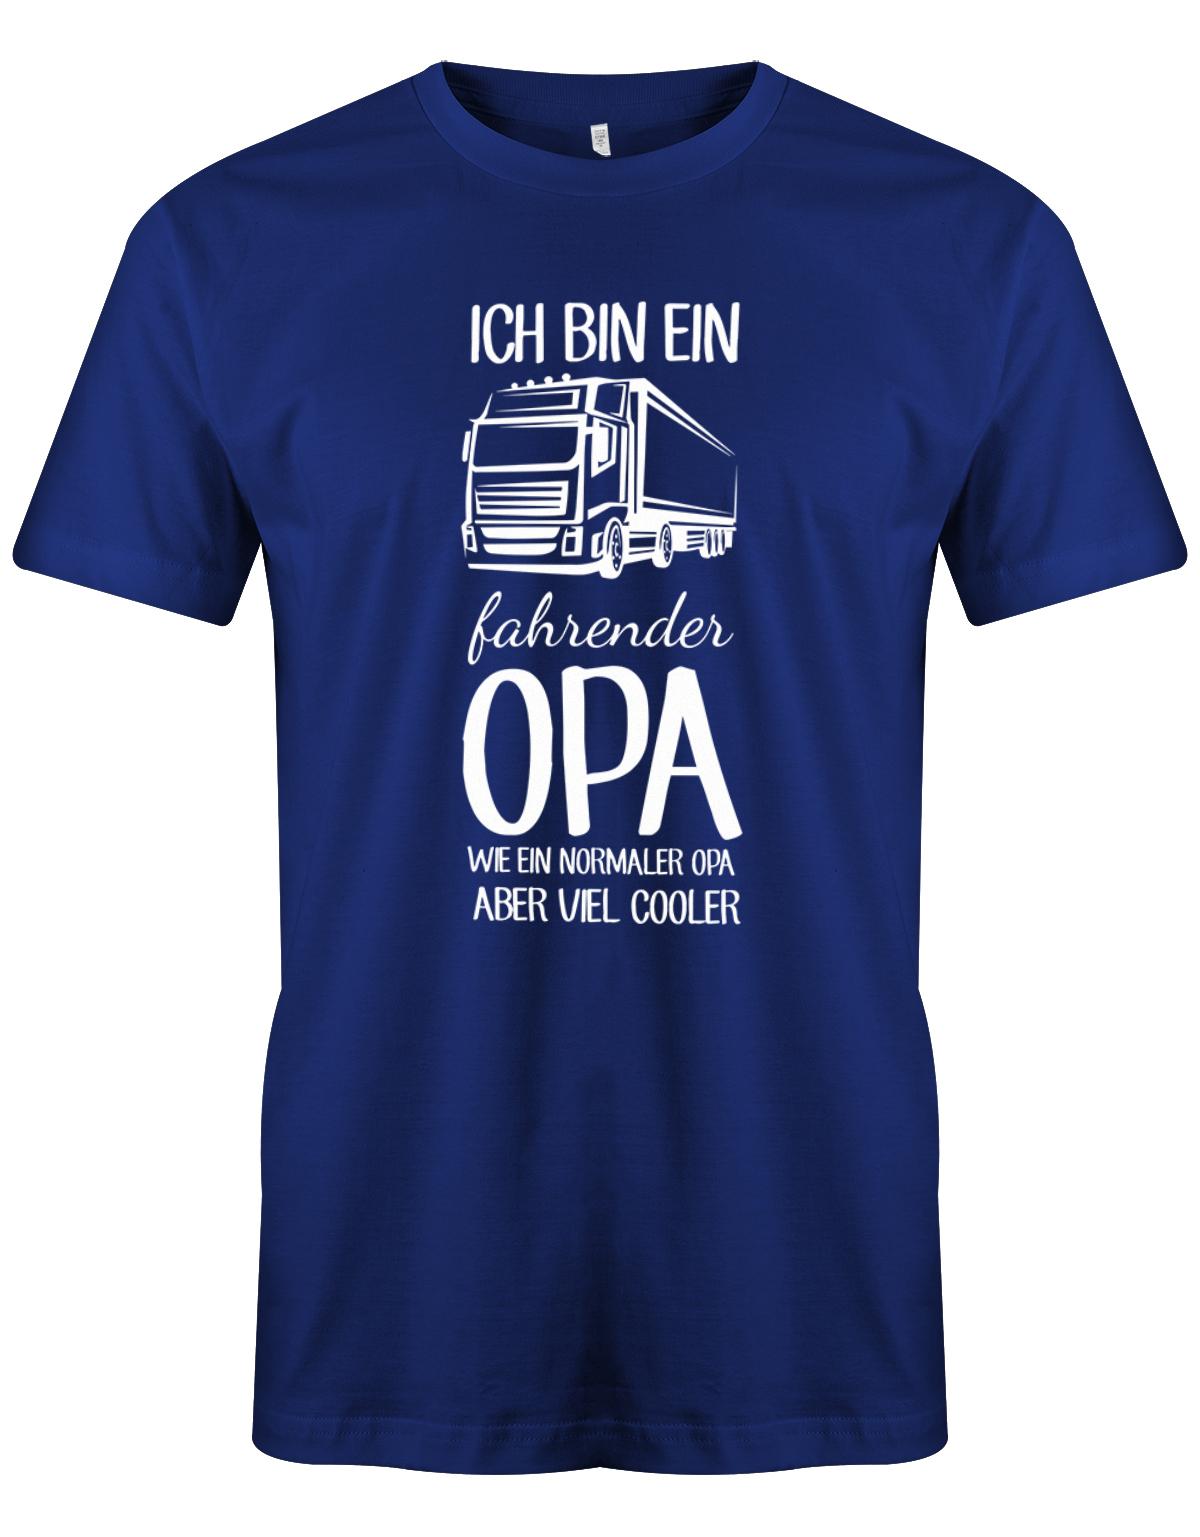 Ich bin ein LKW fahrender Opa wie ein normaler Opa aber viel cooler - Kraftfahrer - Herren T-Shirt Royalblau